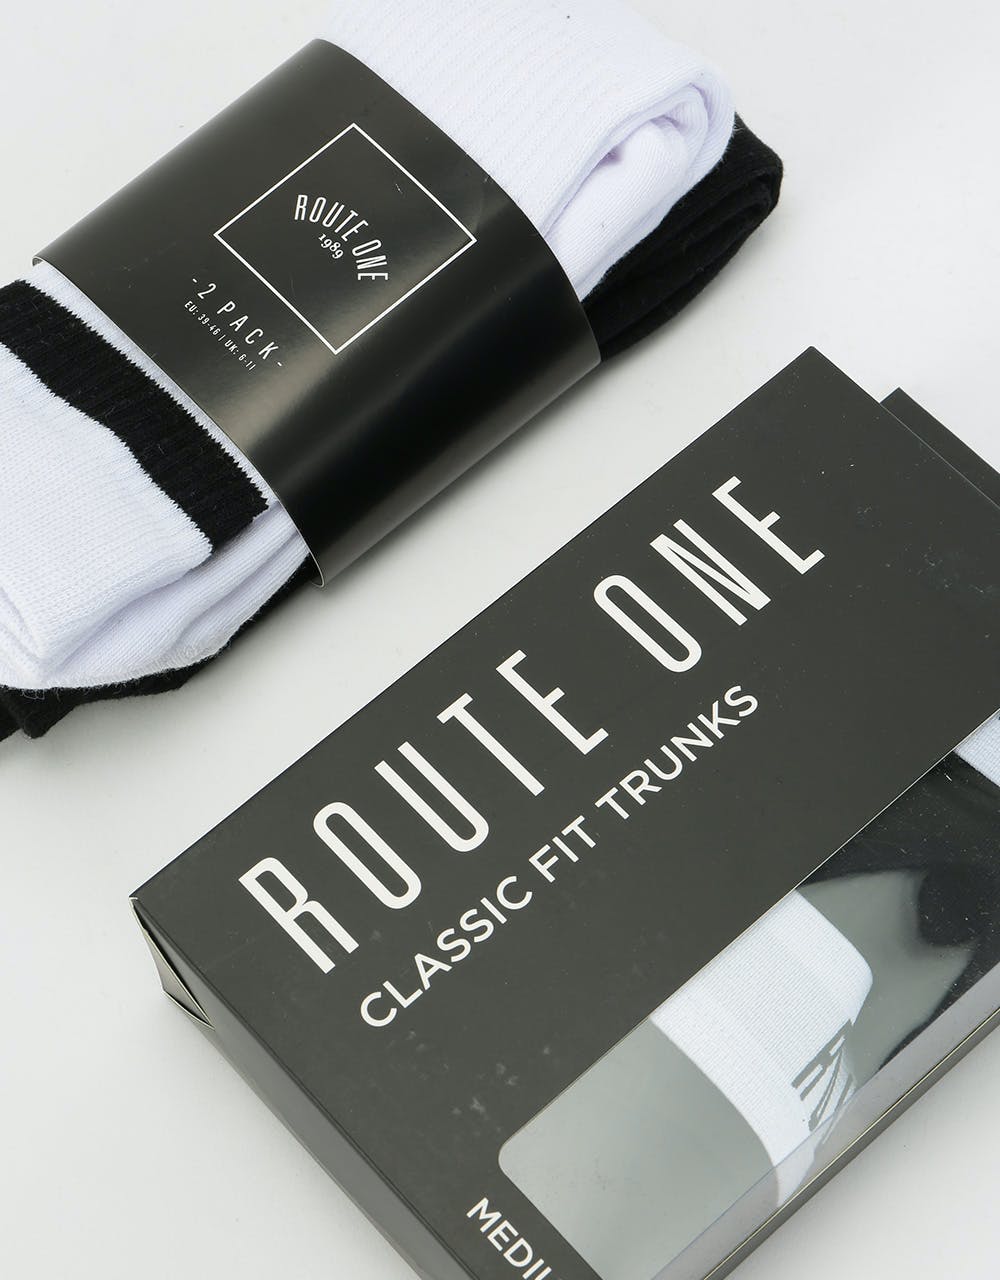 Route One Underwear Gift Set - Black